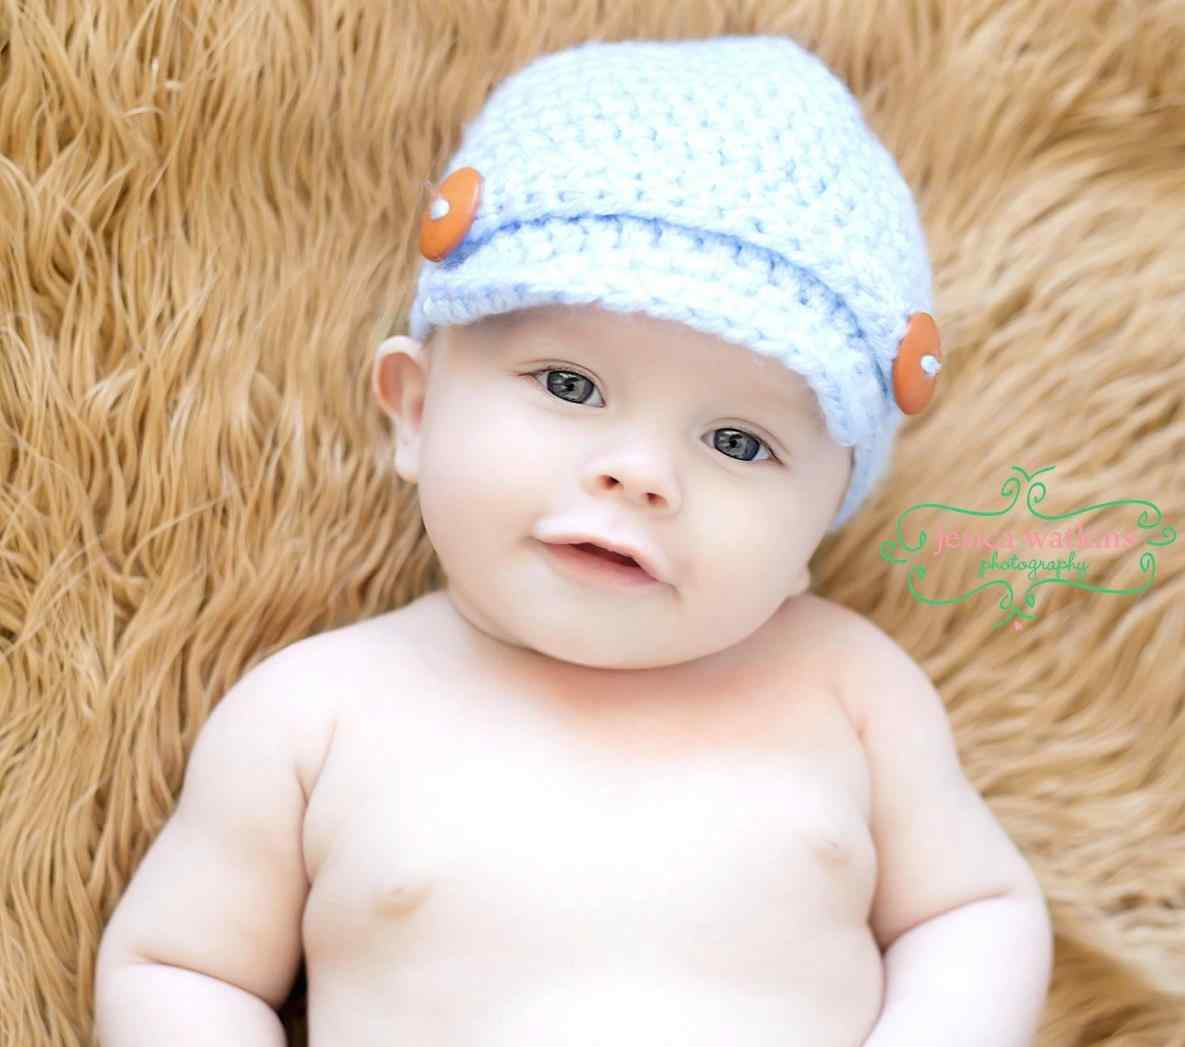 Free Crochet Pattern Baby Boy Hat Free Crochet Patterns For Ba Boys Hats Hat Patternrhmicahmakescom